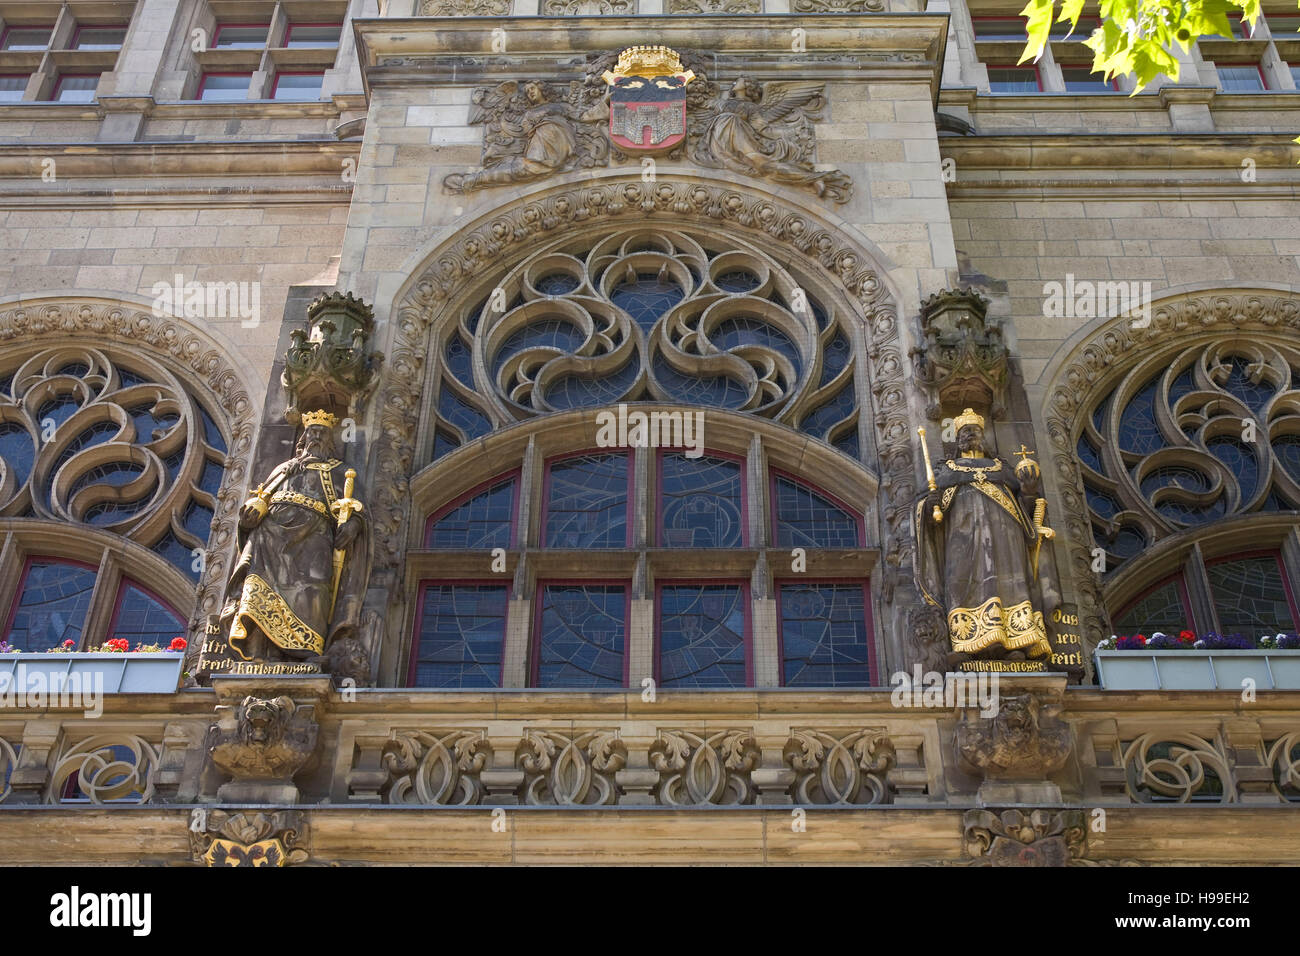 Deutschland, Ruhr-Gebiet, Duisburg, Statuen von den Imperatoren Karl und Wilhelm der große, historische Rathaus. Stockfoto